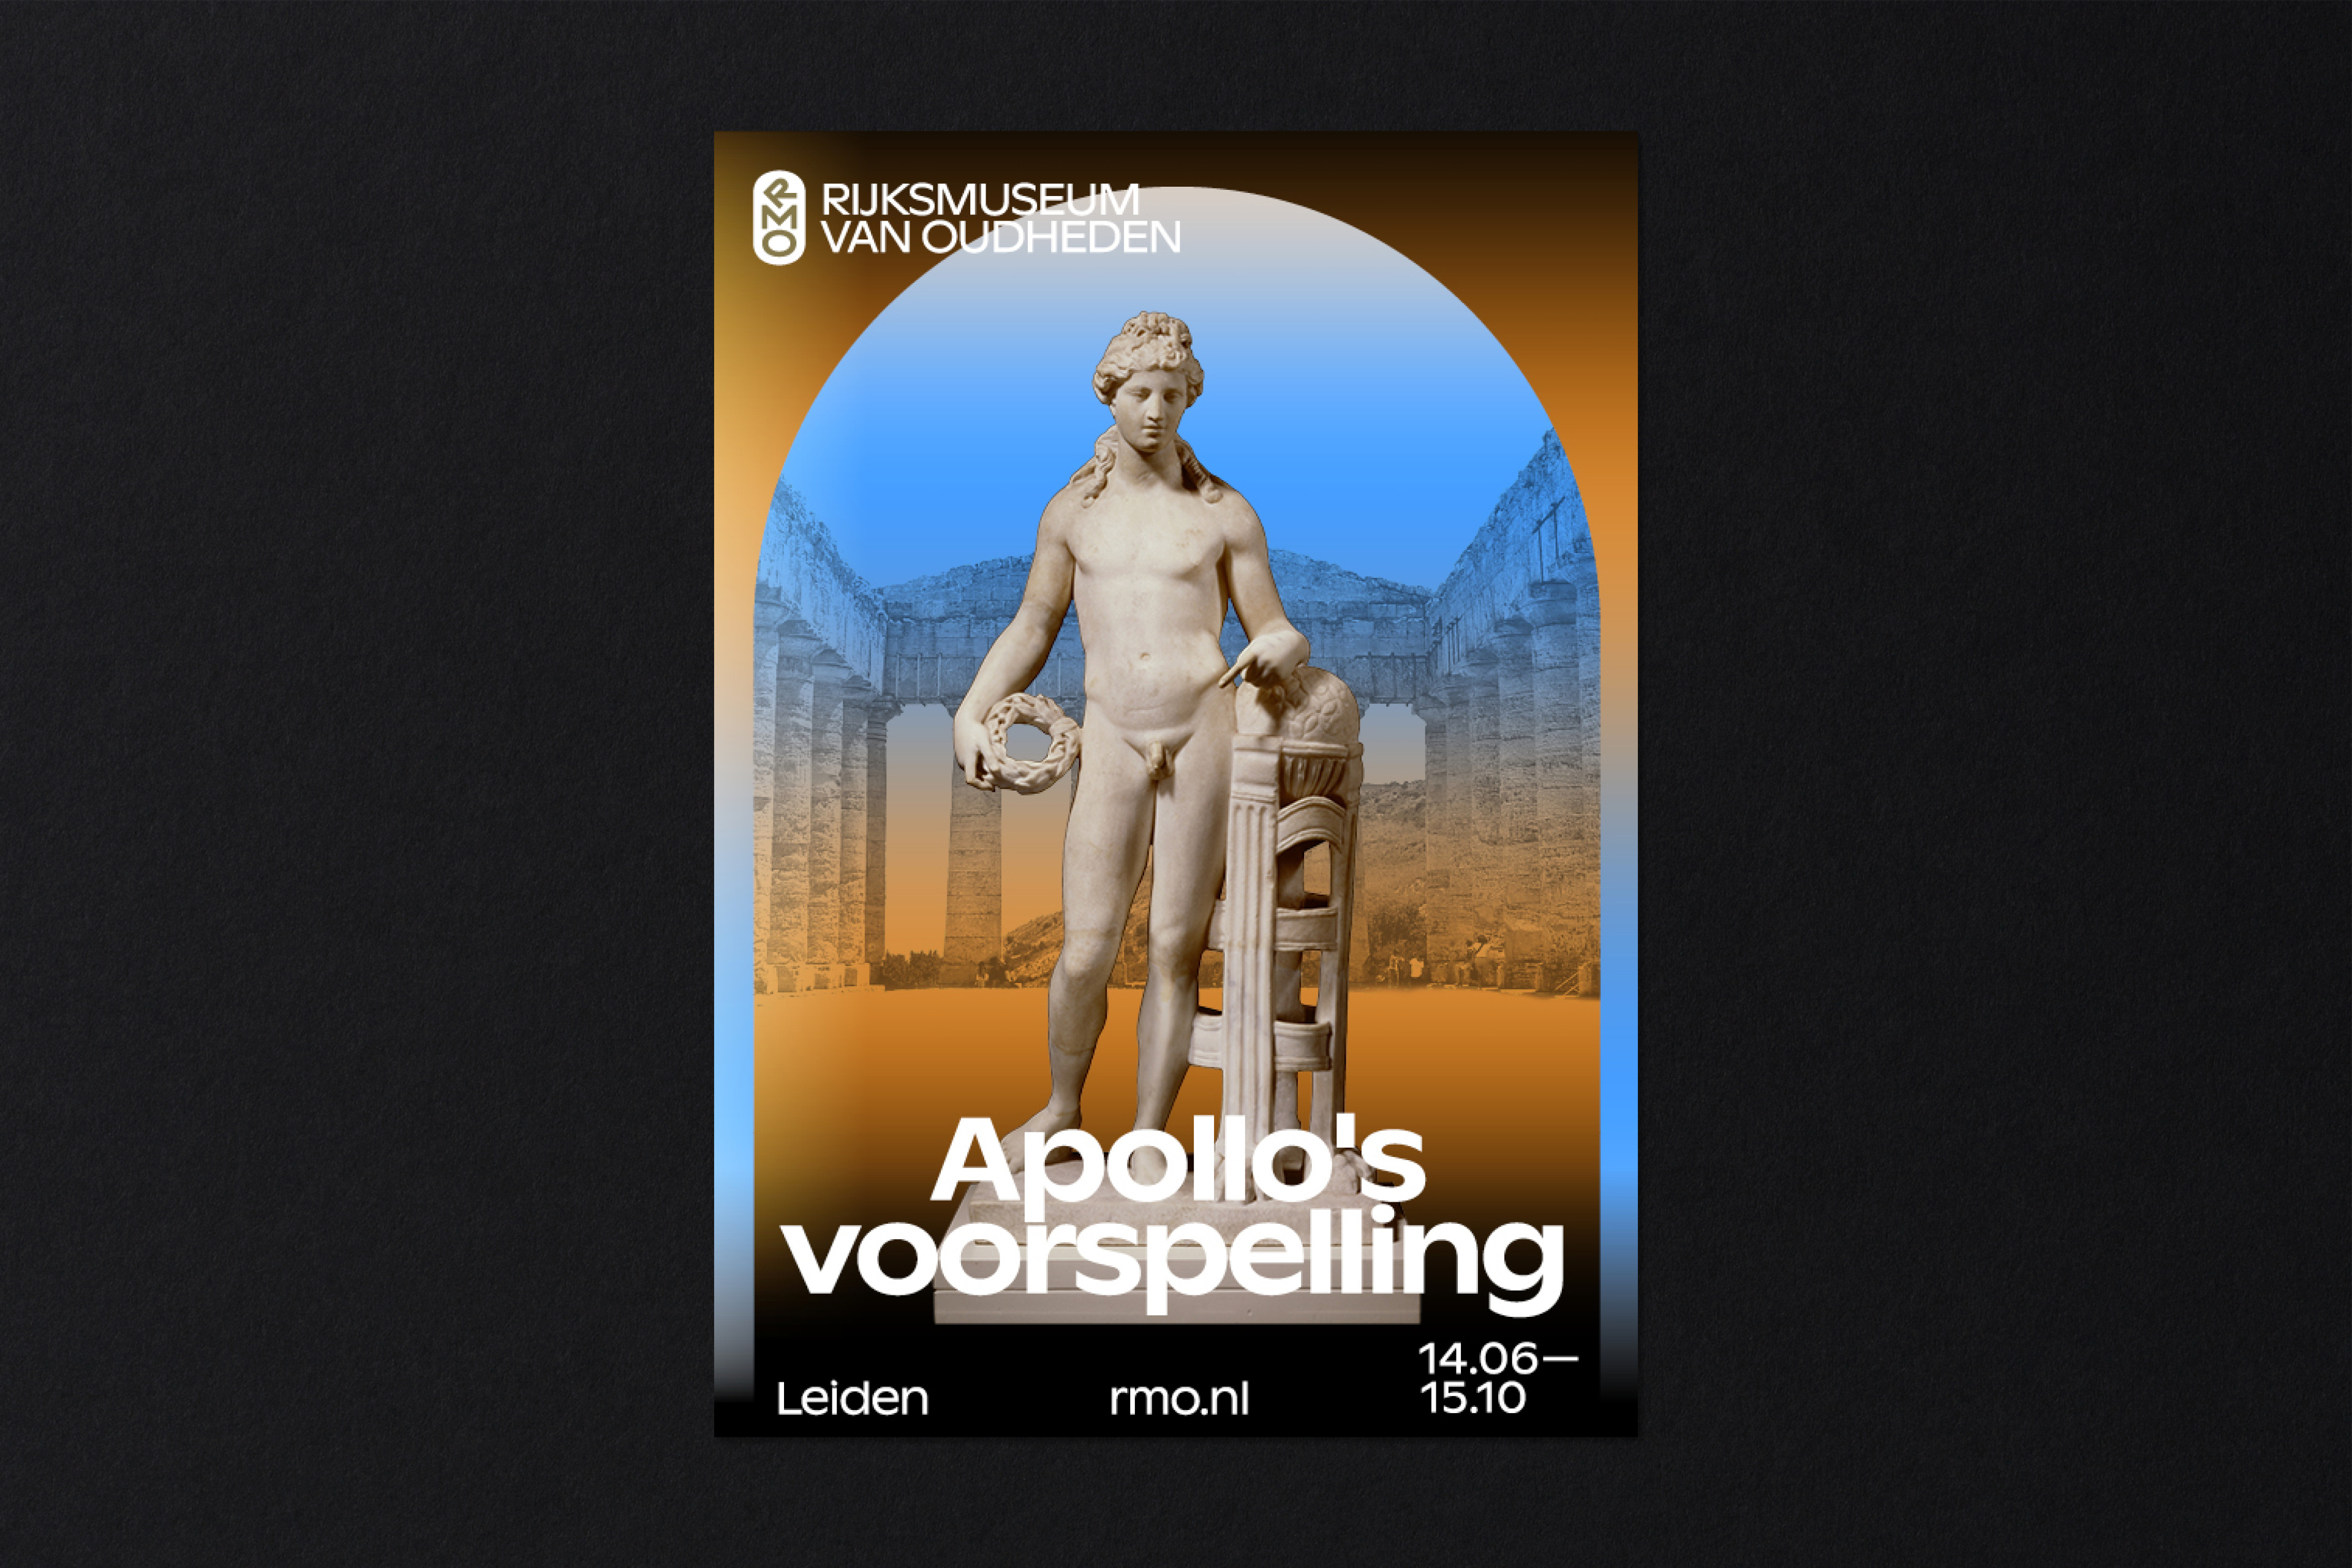 Rijksmuseum van Oudheden Apolo